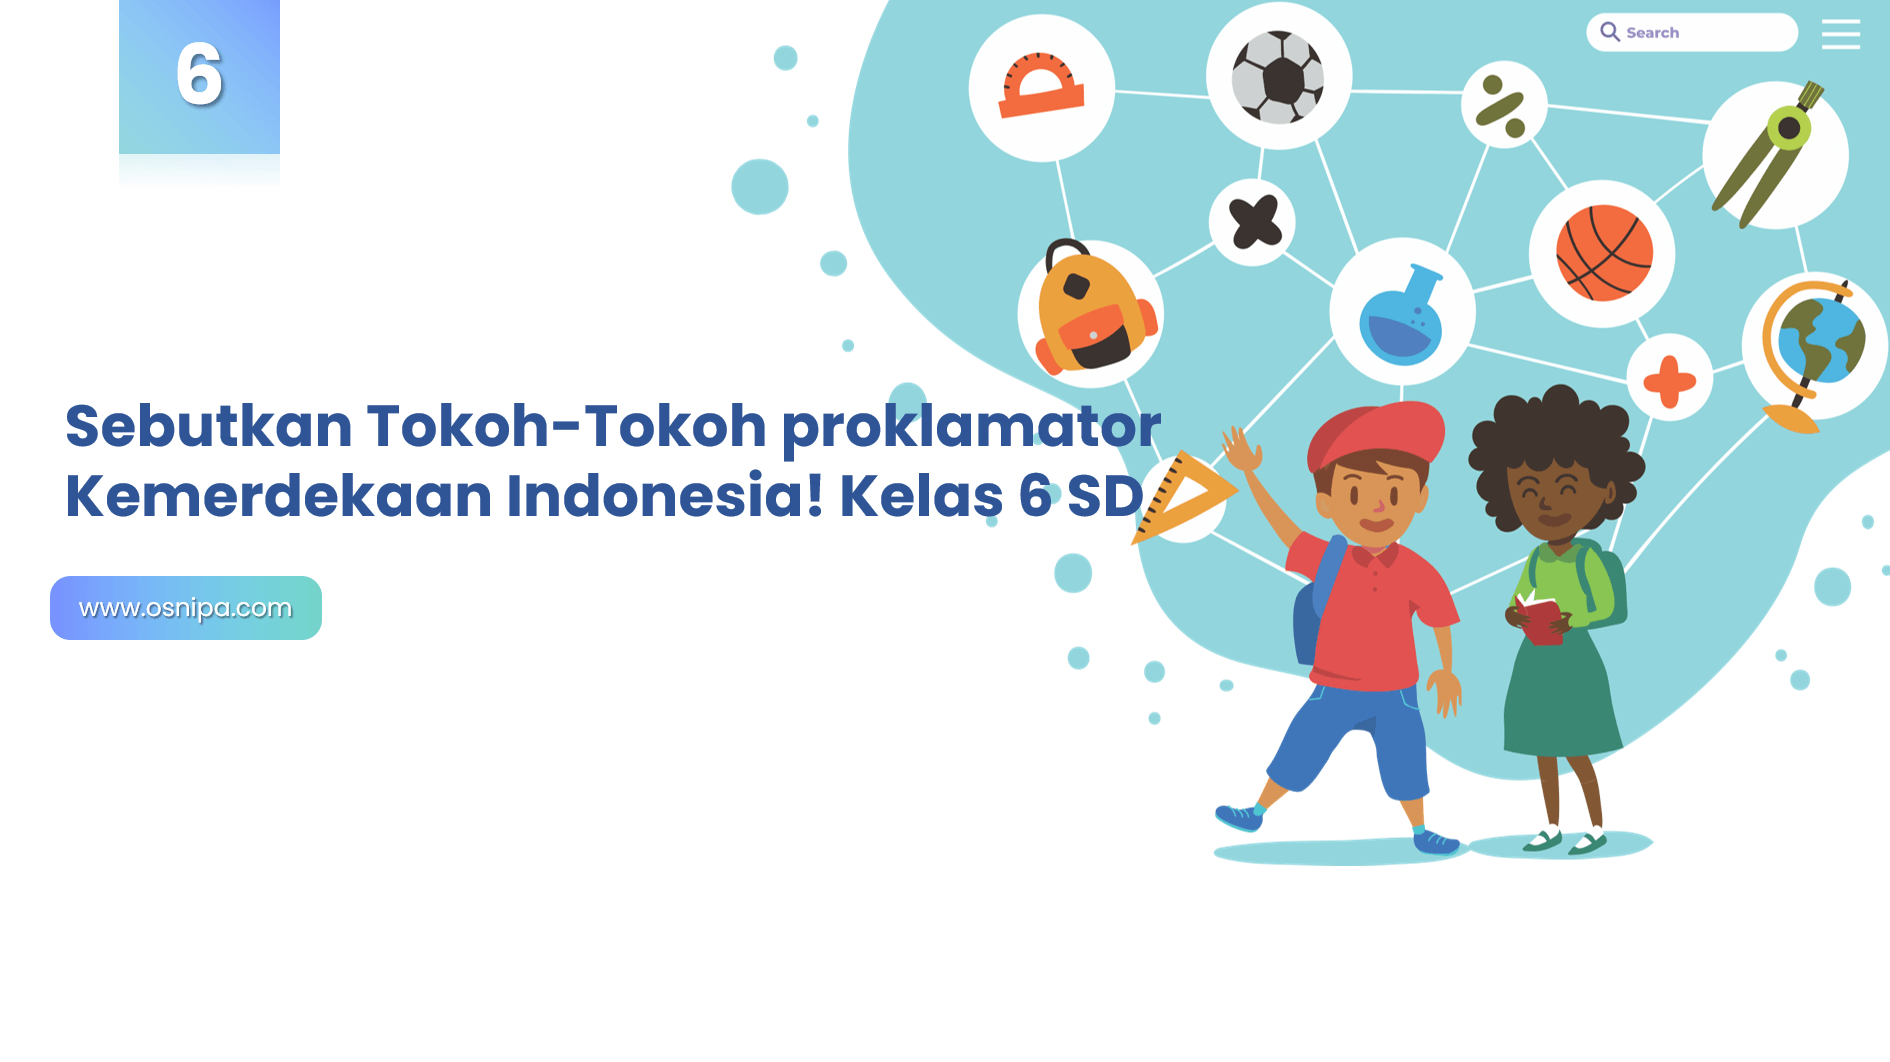 Sebutkan Tokoh-Tokoh proklamator Kemerdekaan Indonesia! Kelas 6 SD